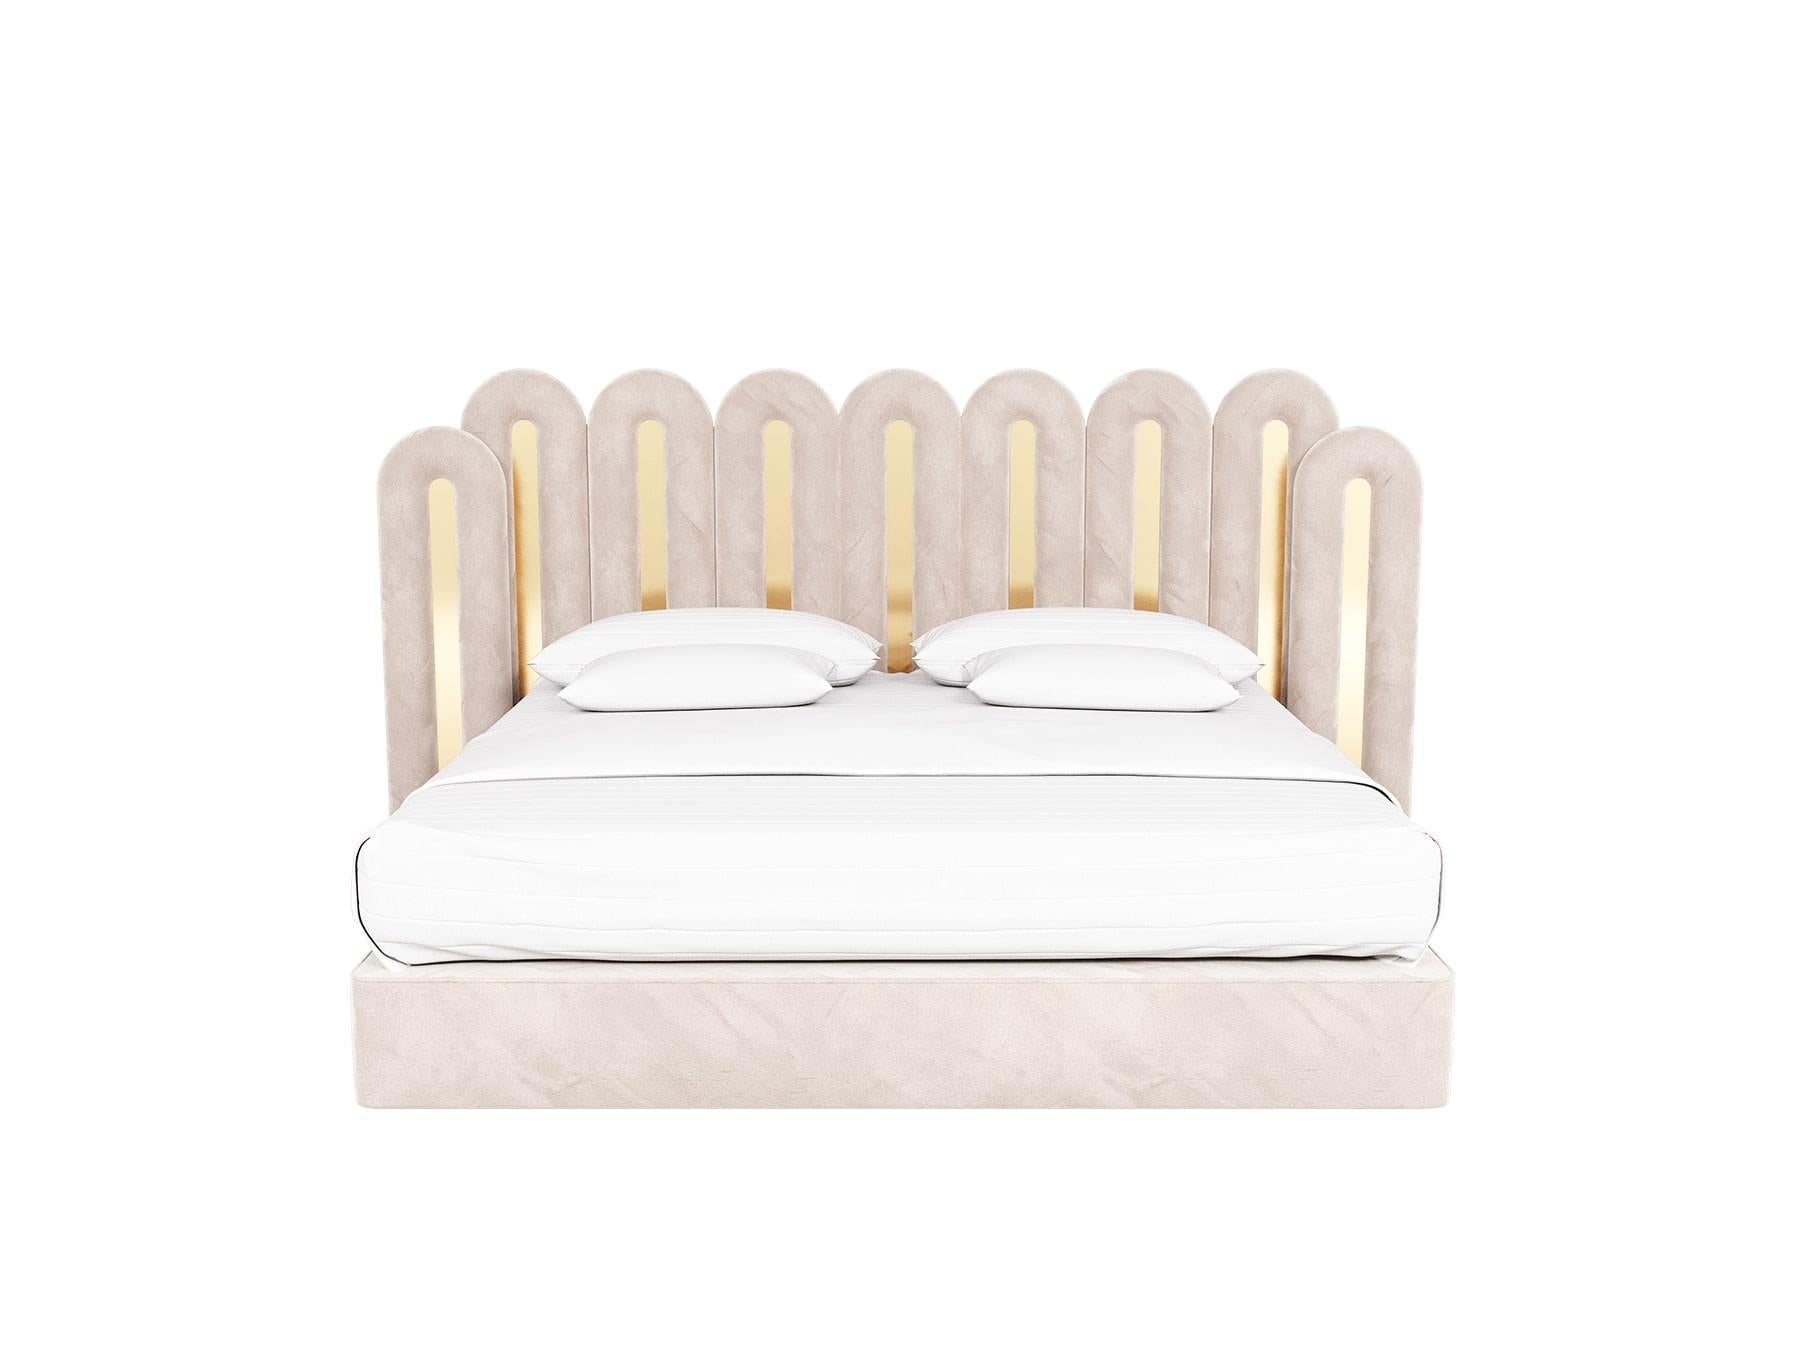 Das Demiz-Bett ist ein modernes, stimmungsvolles Statement. Es ist das perfekte moderne Bett mit Samtbezug für ein hochwertiges Boutique-Hotelprojekt oder ein privates Luxus-Schlafzimmer voller Persönlichkeit und Charisma.

MATERIALIEN: